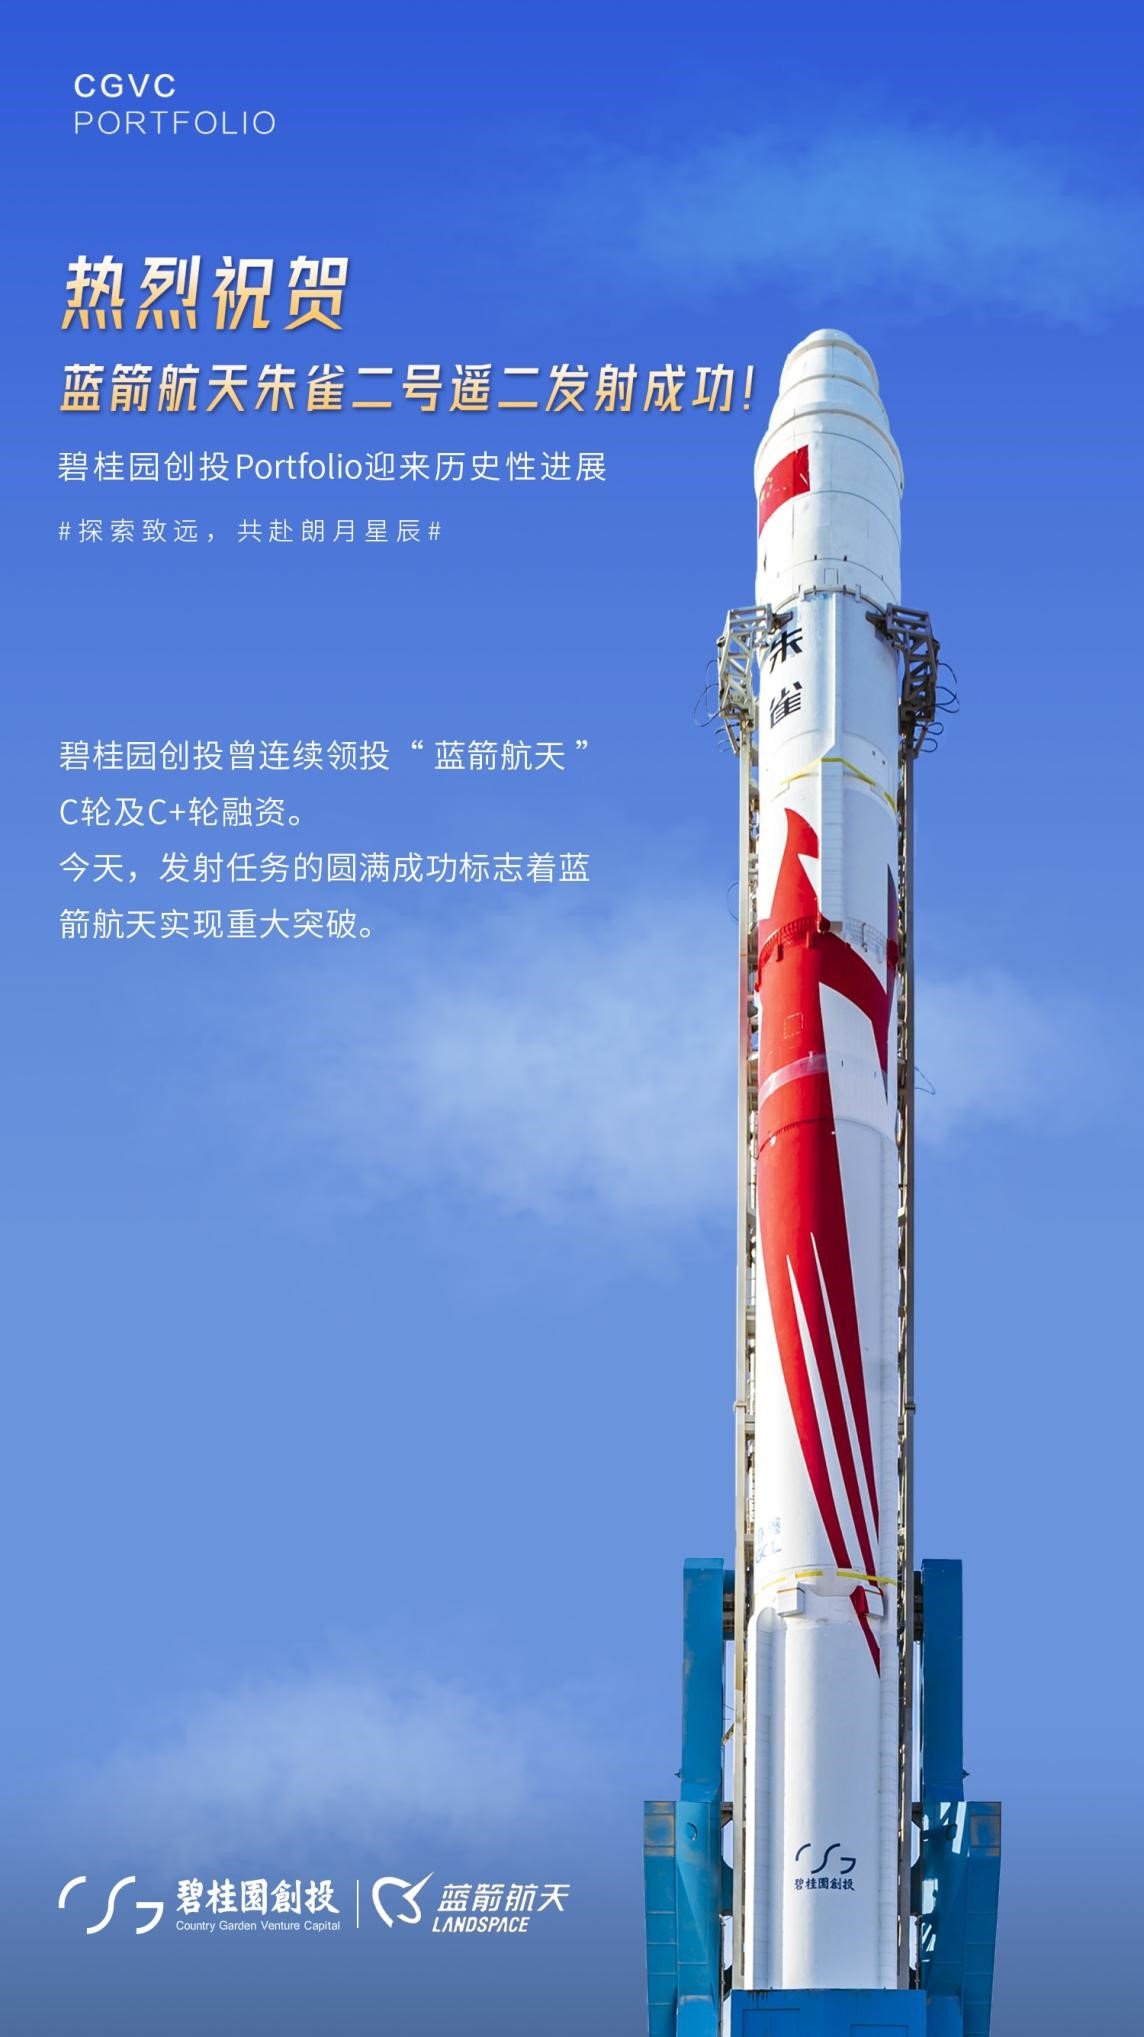 全球首枚成功入轨的液氧甲烷火箭！碧桂园创投Portfolio「蓝箭航天」迎重大突破